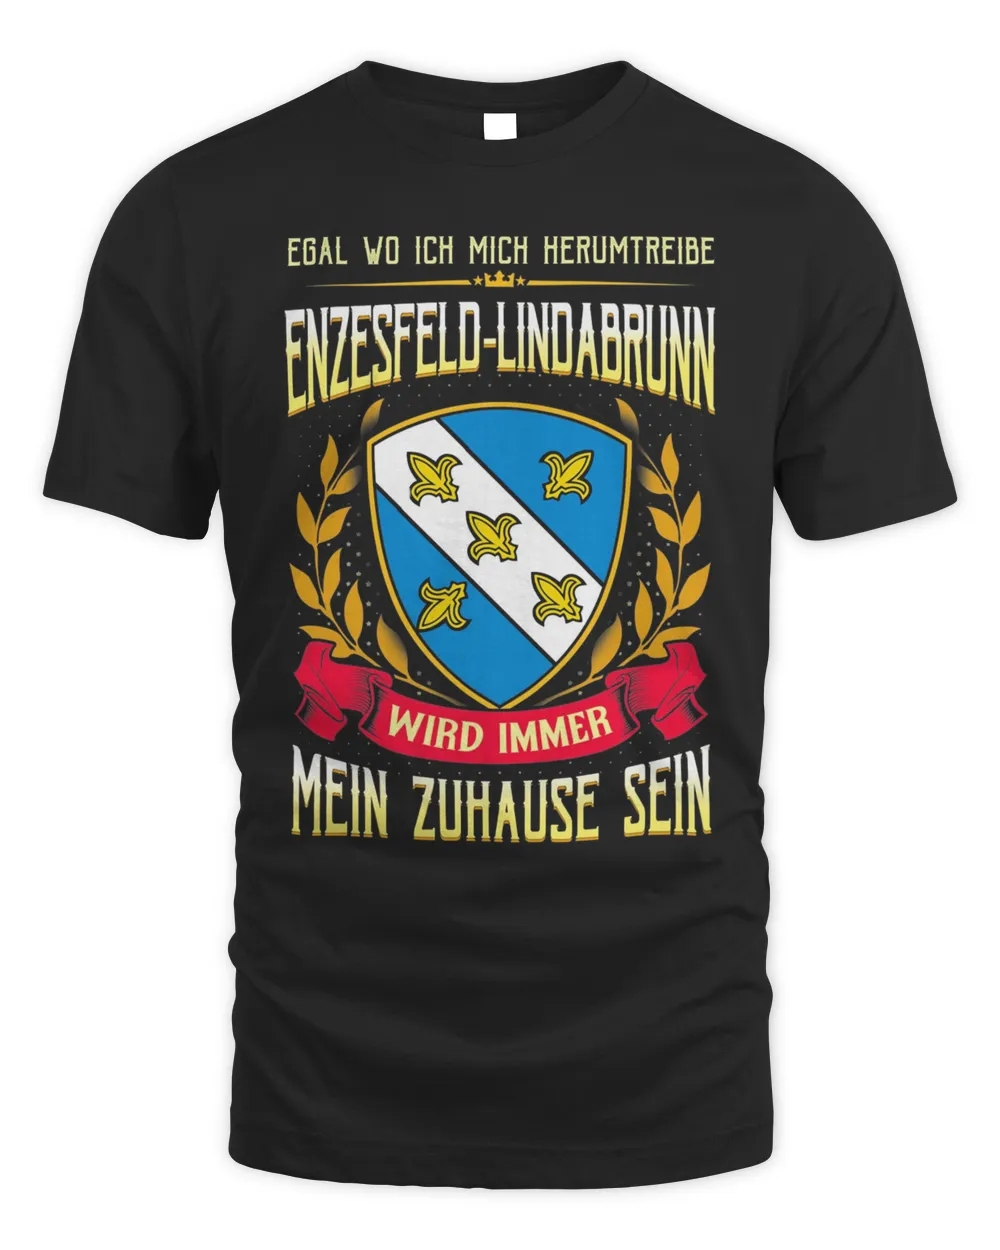 Egal Wo Ich Mich Herumtreibe Enzesfeld-Lindabrunn Wird Immer Mein Zuhause Sein Shirt Unisex Standard T-Shirt black xl